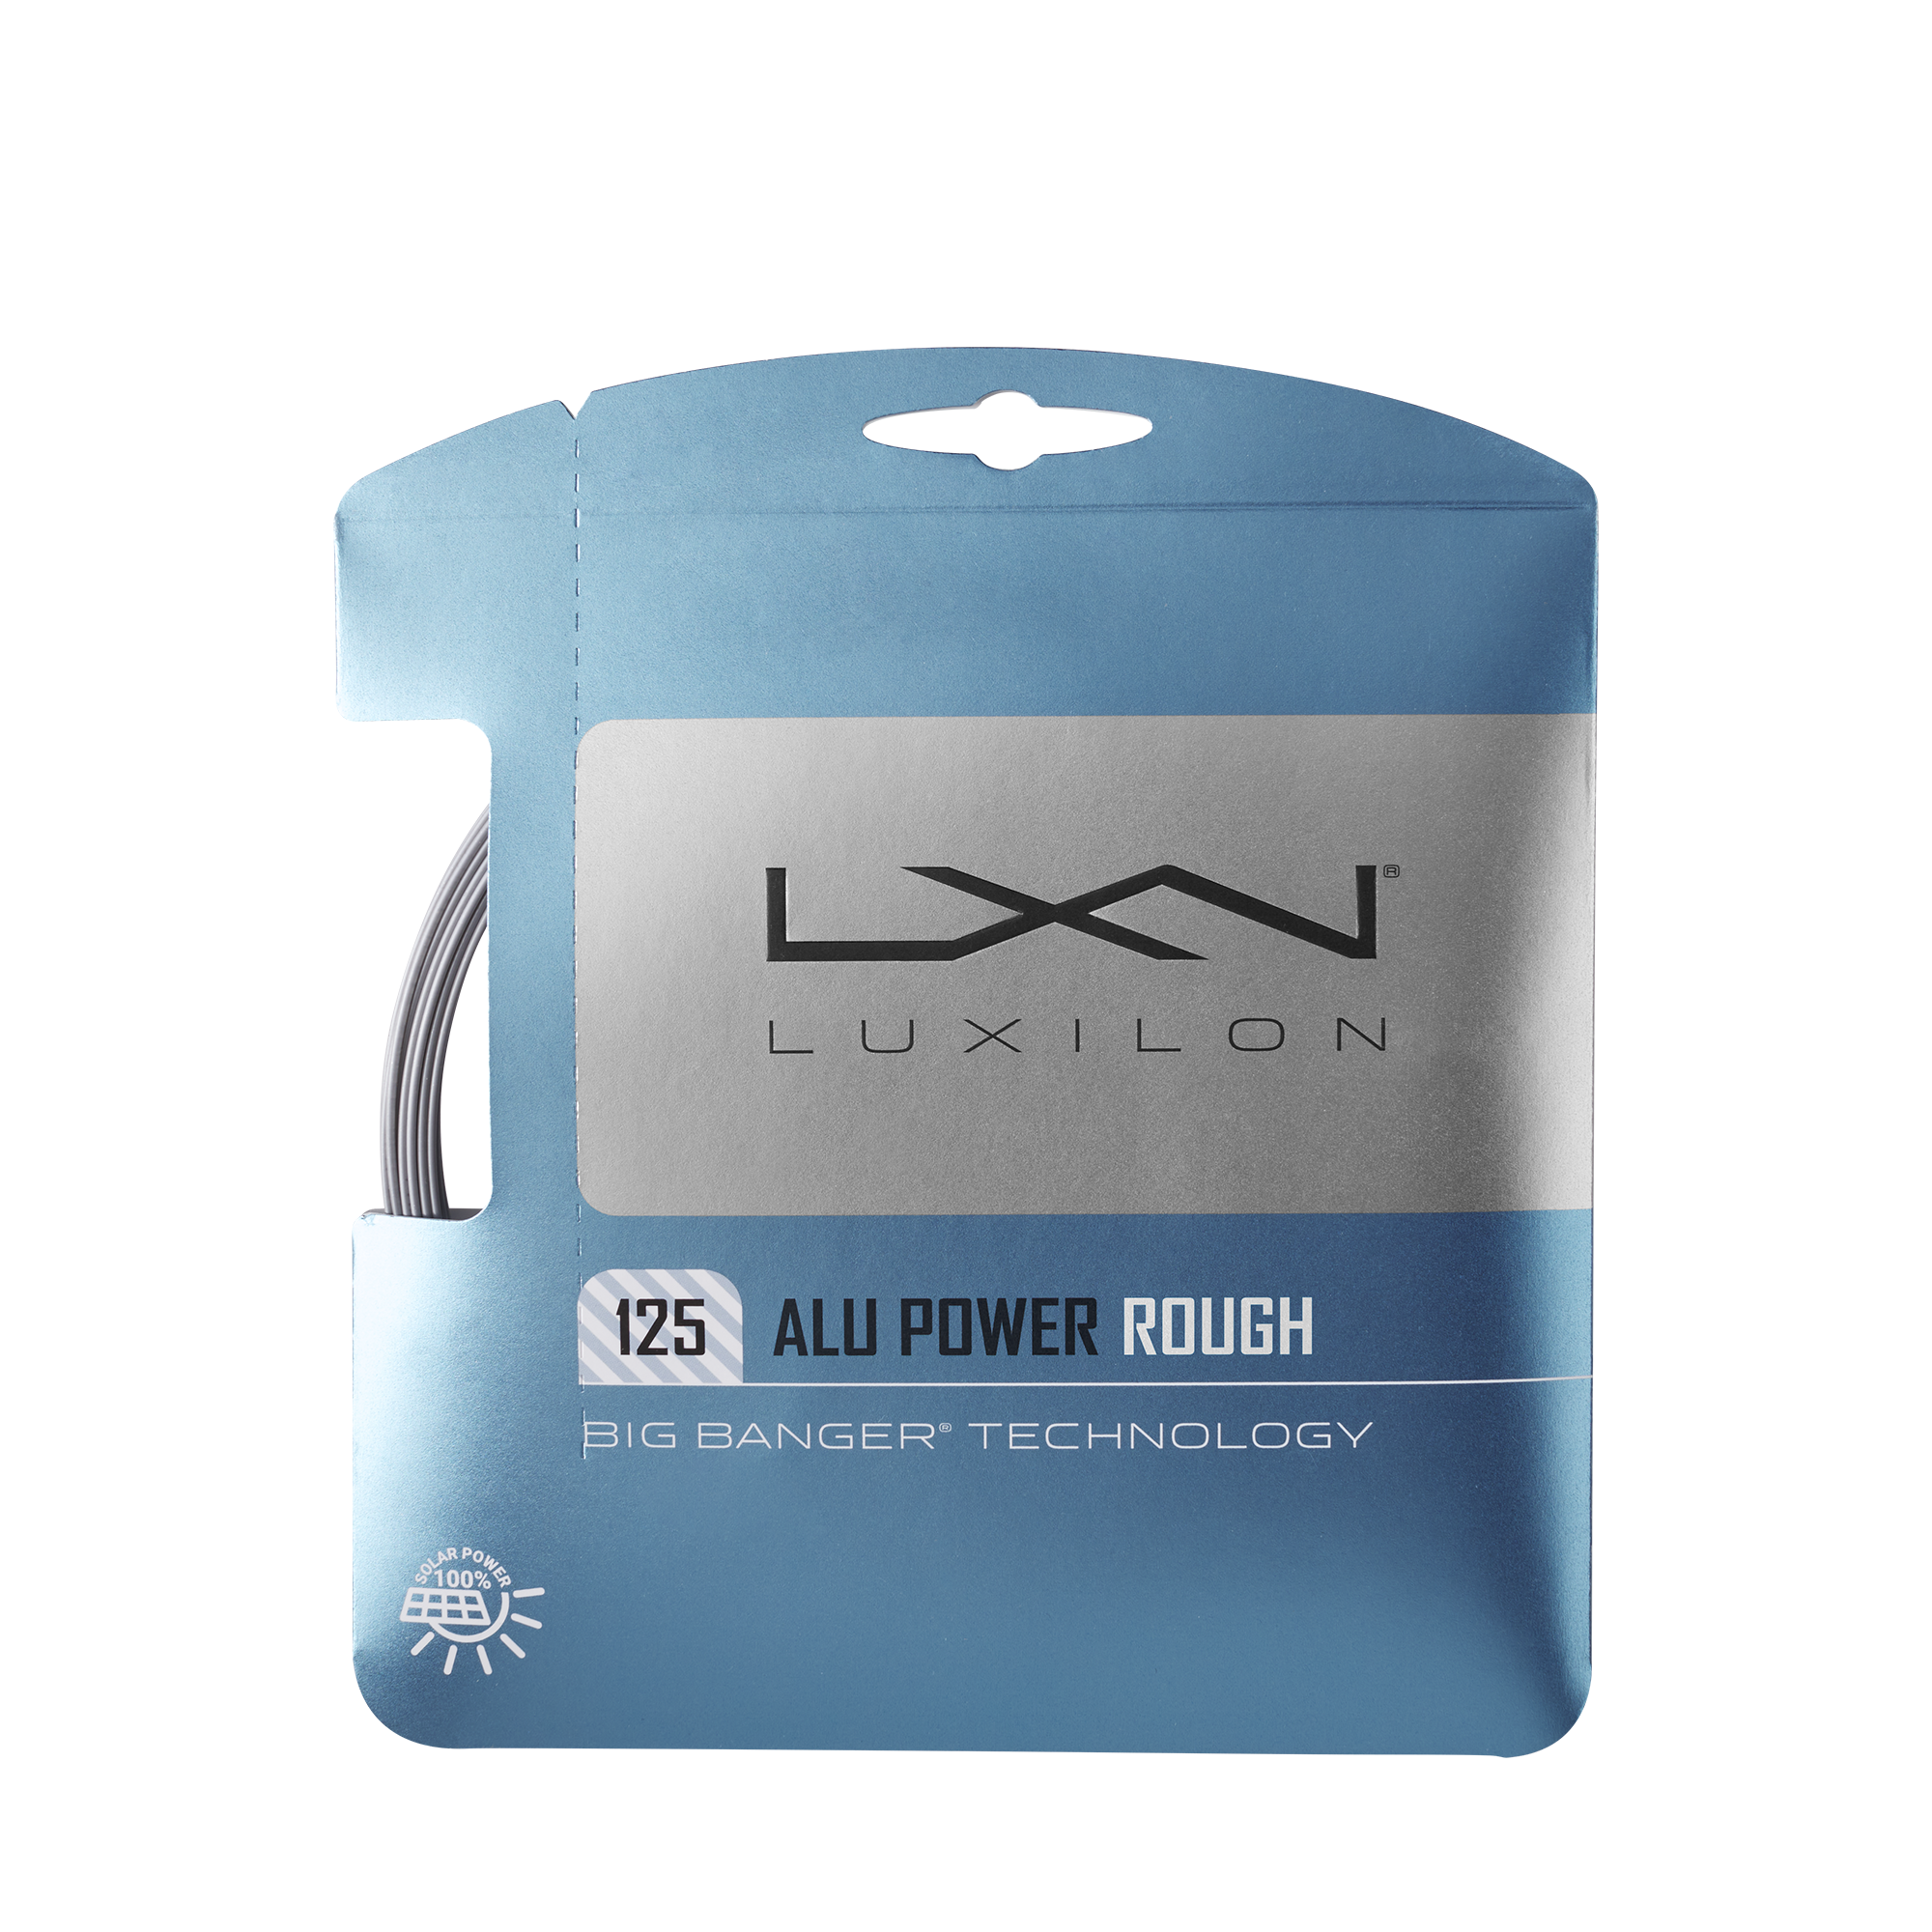 Luxilon Alu Power Rough 125 Pack - Argent